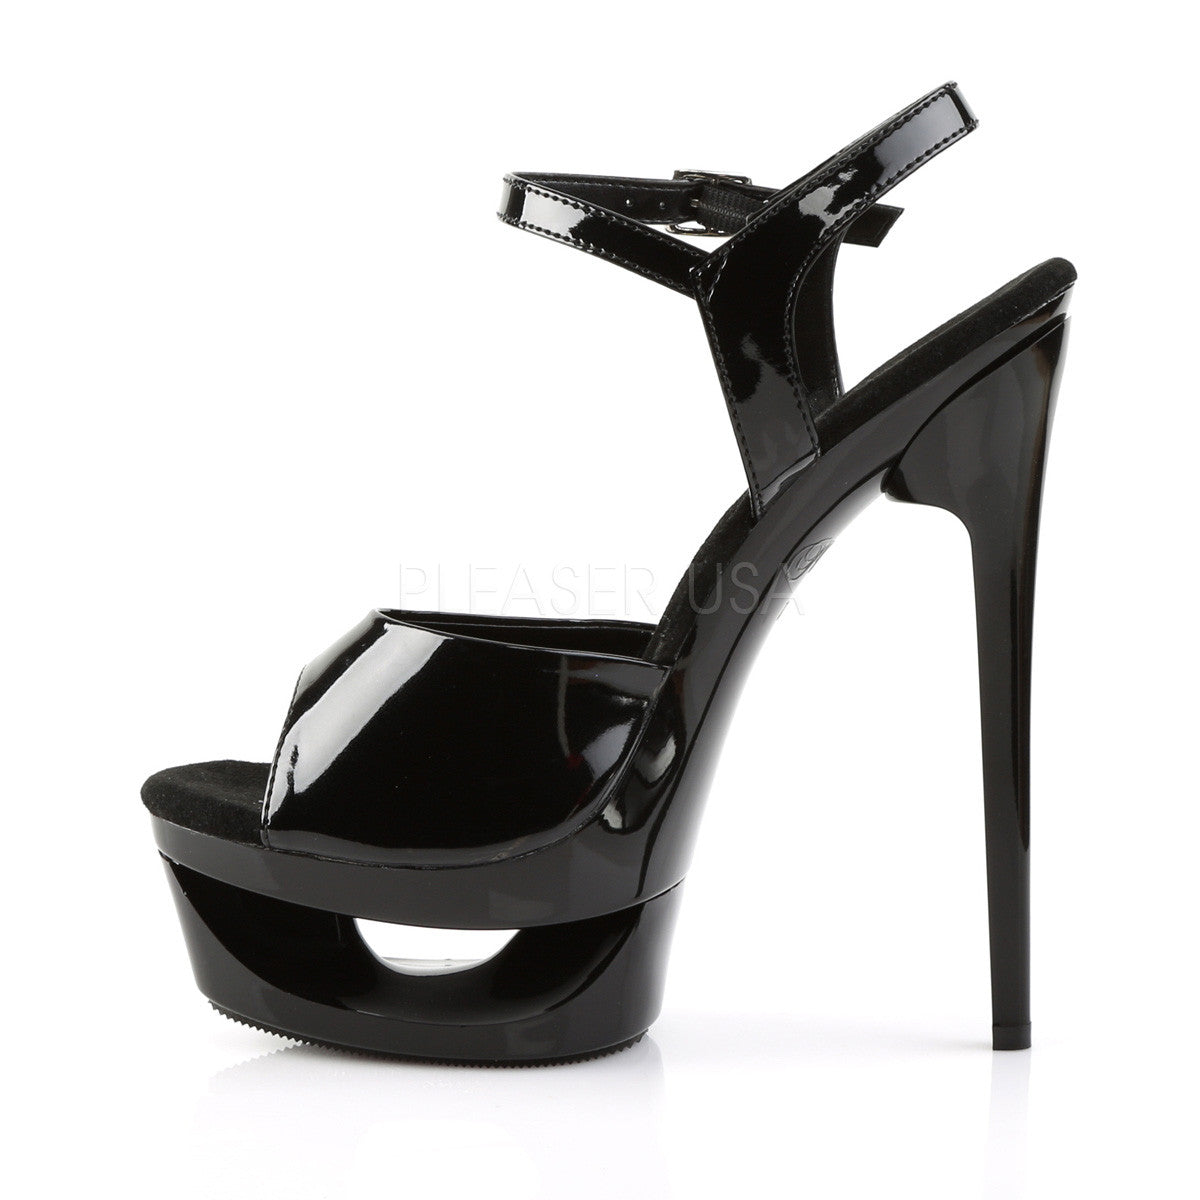 Pleaser ECLIPSE-609 Black Pat Ankle Strap Sandals – Shoecup.com